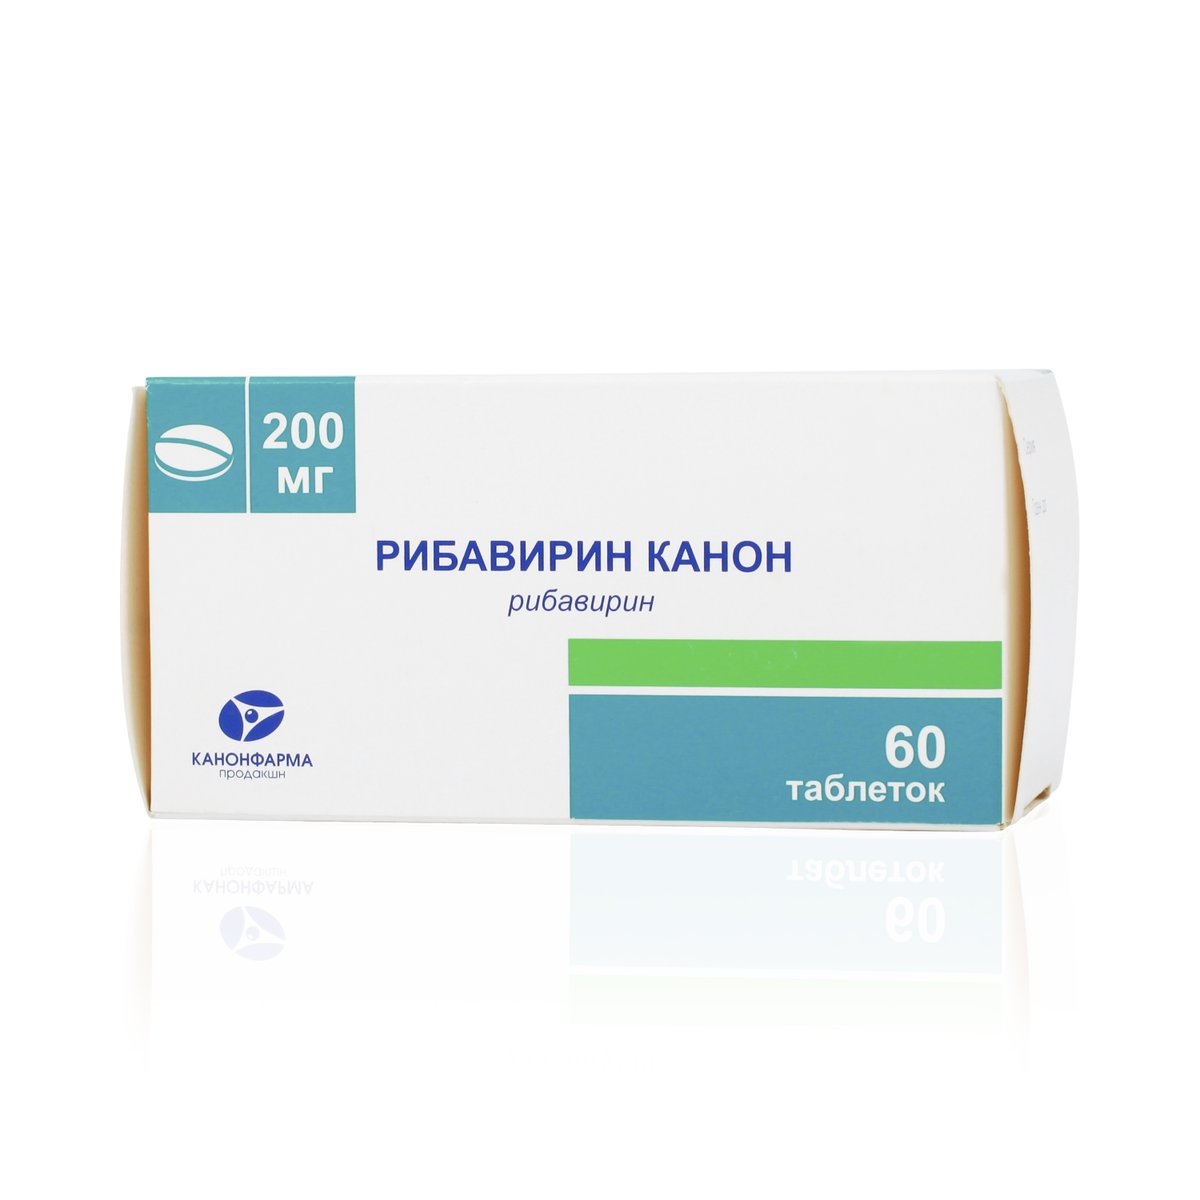 Рибавирин канон (таблетки, 60 шт, 200 мг) - цена,  онлайн в .